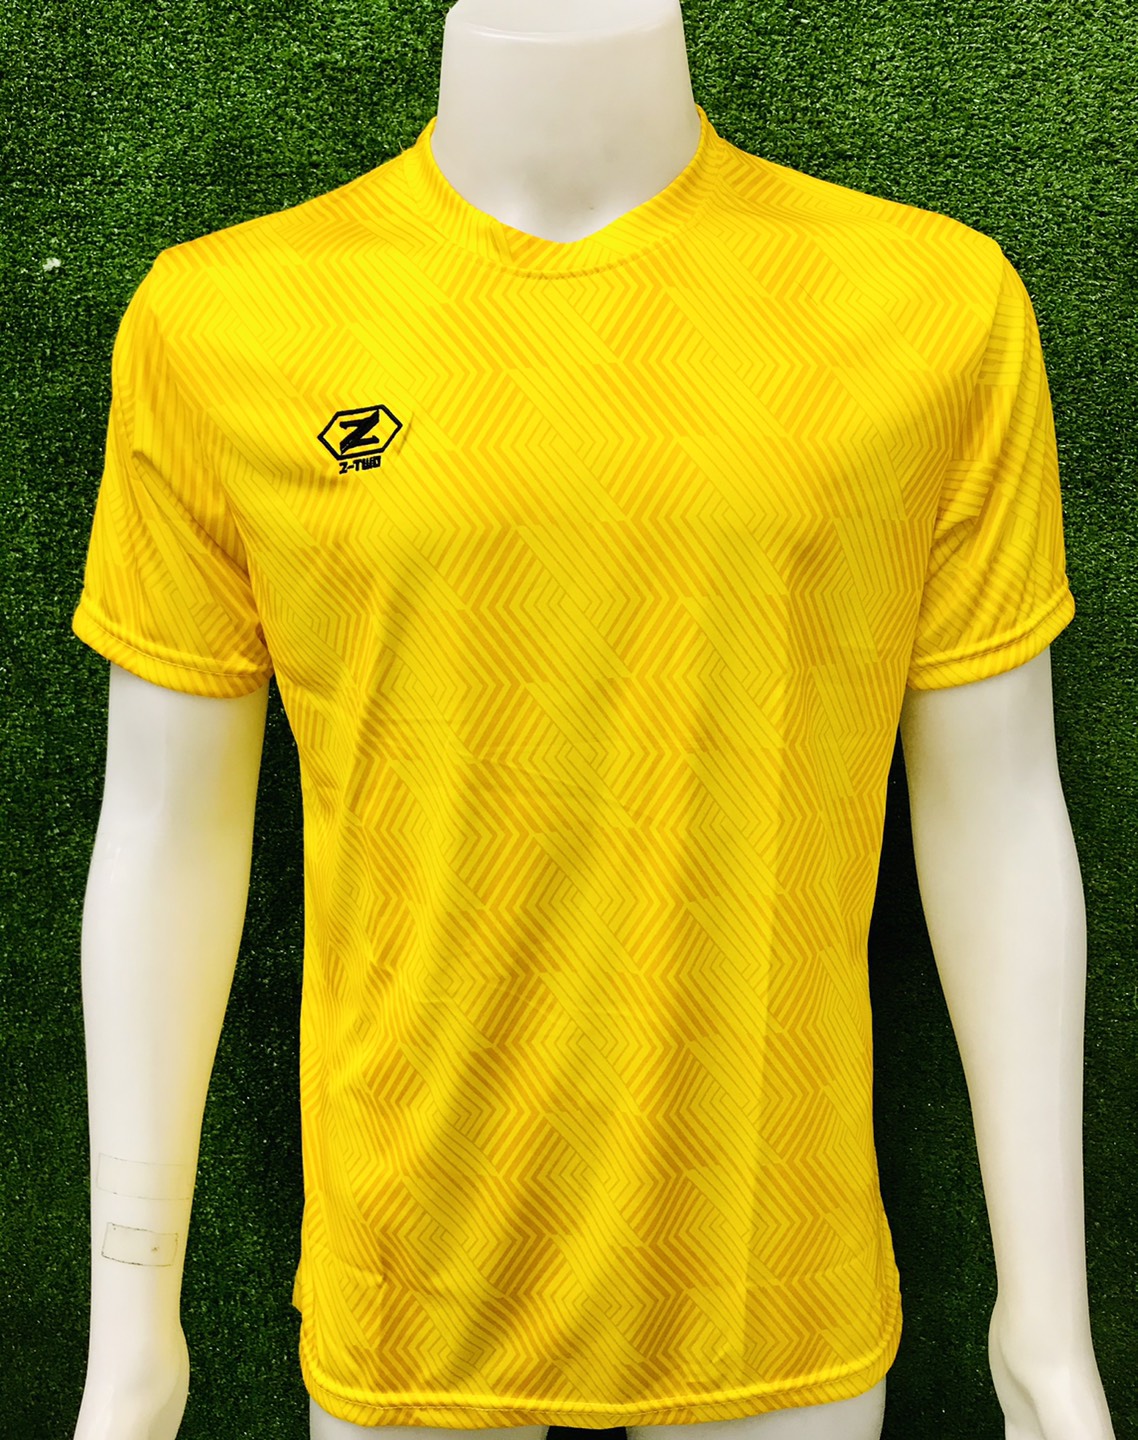 Z two pro เสื้อกีฬาผ้าพิมพ์ลาย ซีทูโปร (สีเหลือง)